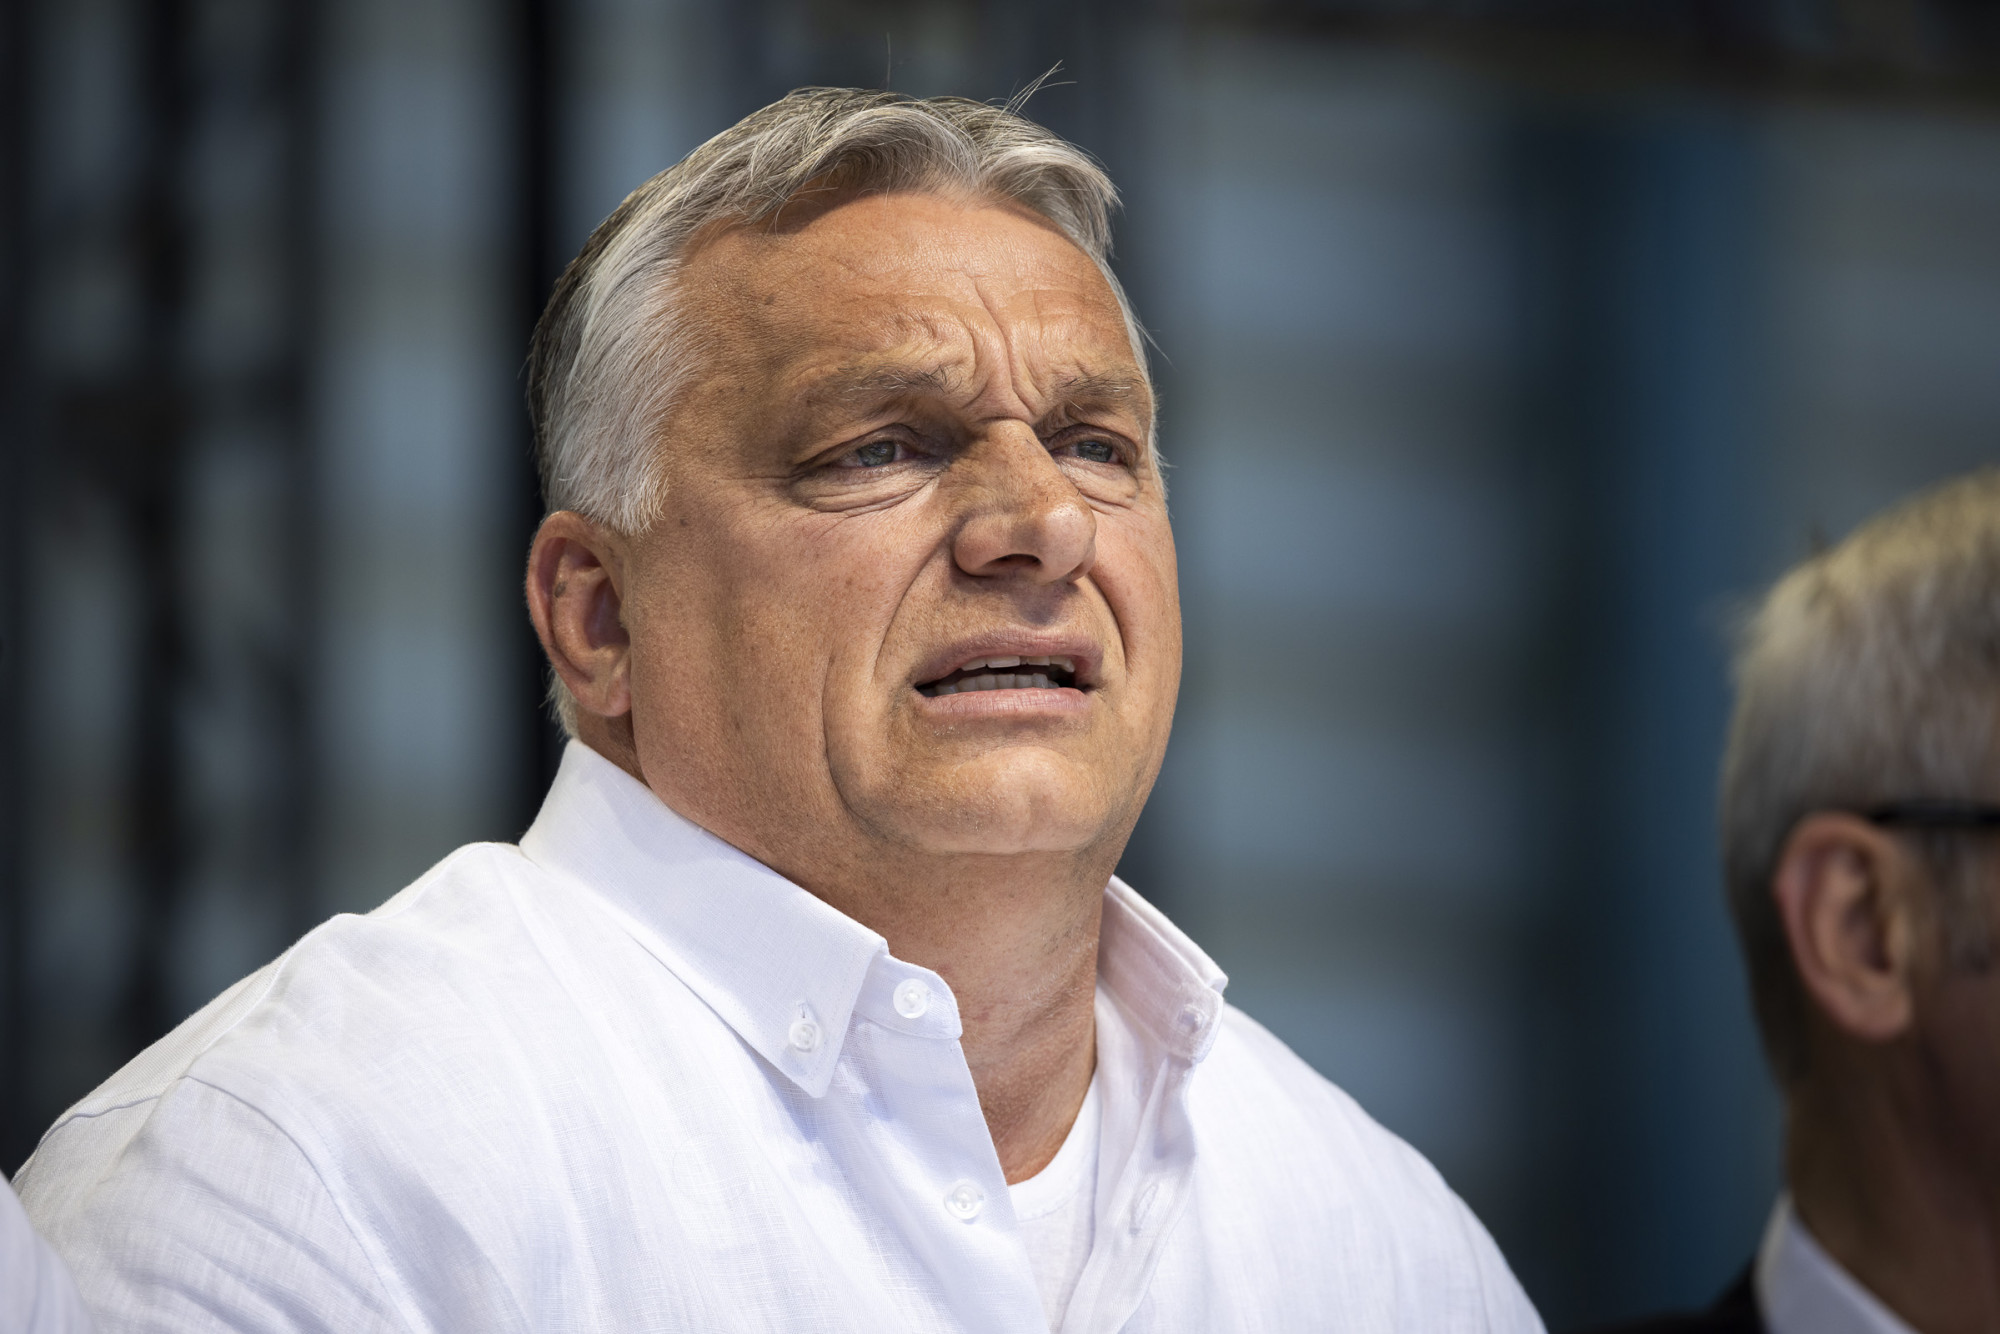 A Települési Önkormányzatok Szövetsége is a tűzifarendelet visszavonását kéri Orbántól